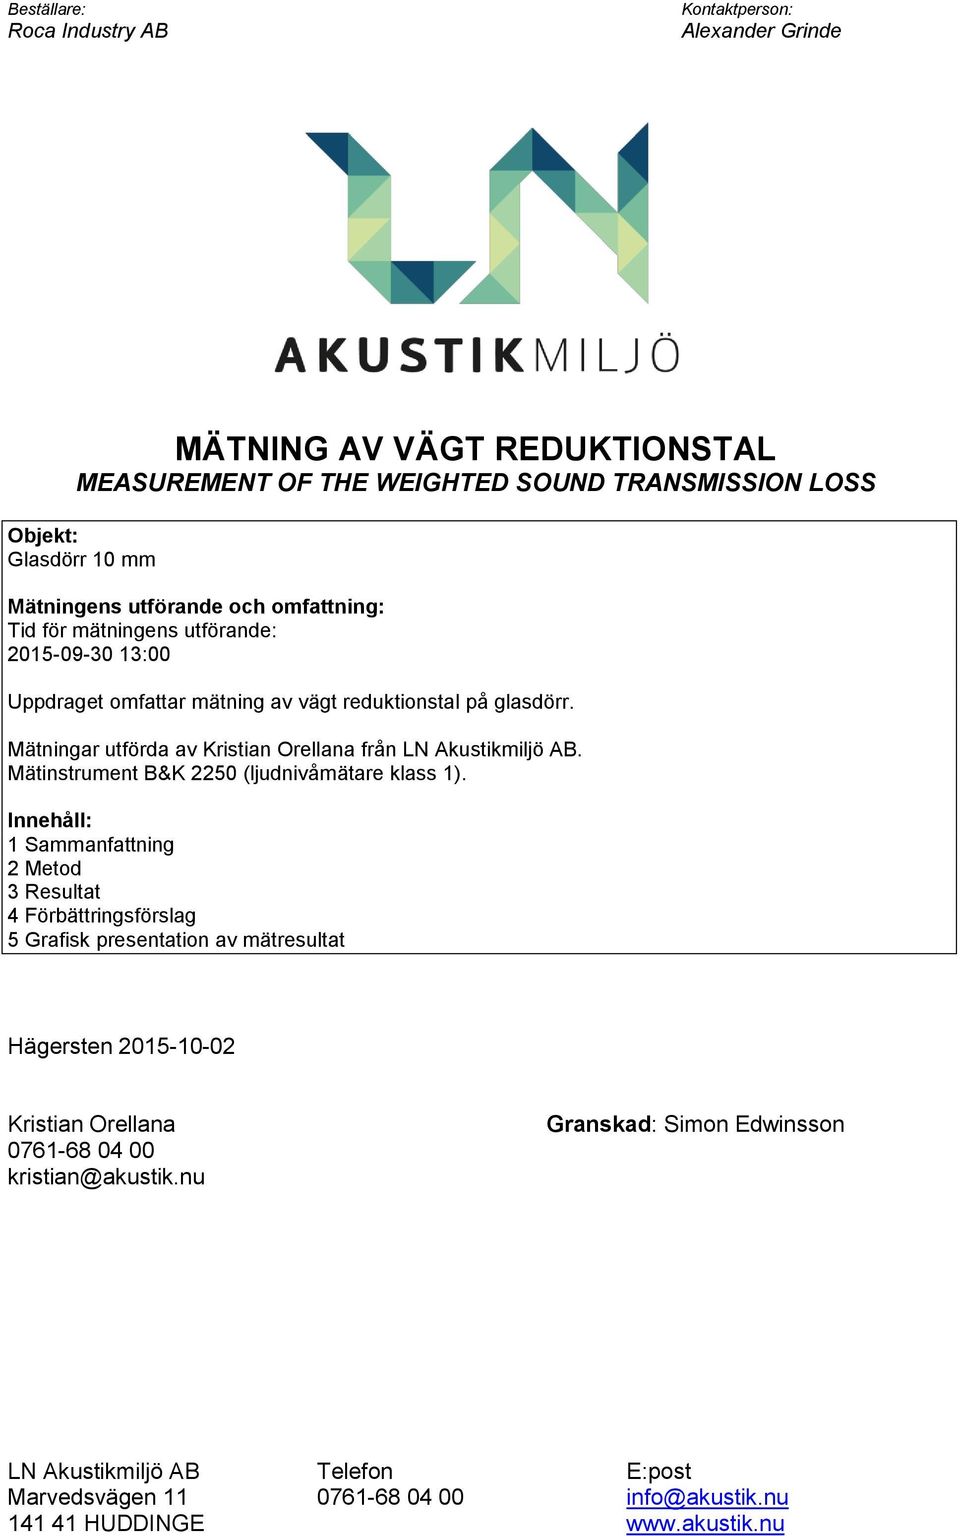 Mätningar utförda av Kristian Orellana från L Akustikmiljö AB. Mätinstrument B&K 2250 (ljudnivåmätare klass 1).